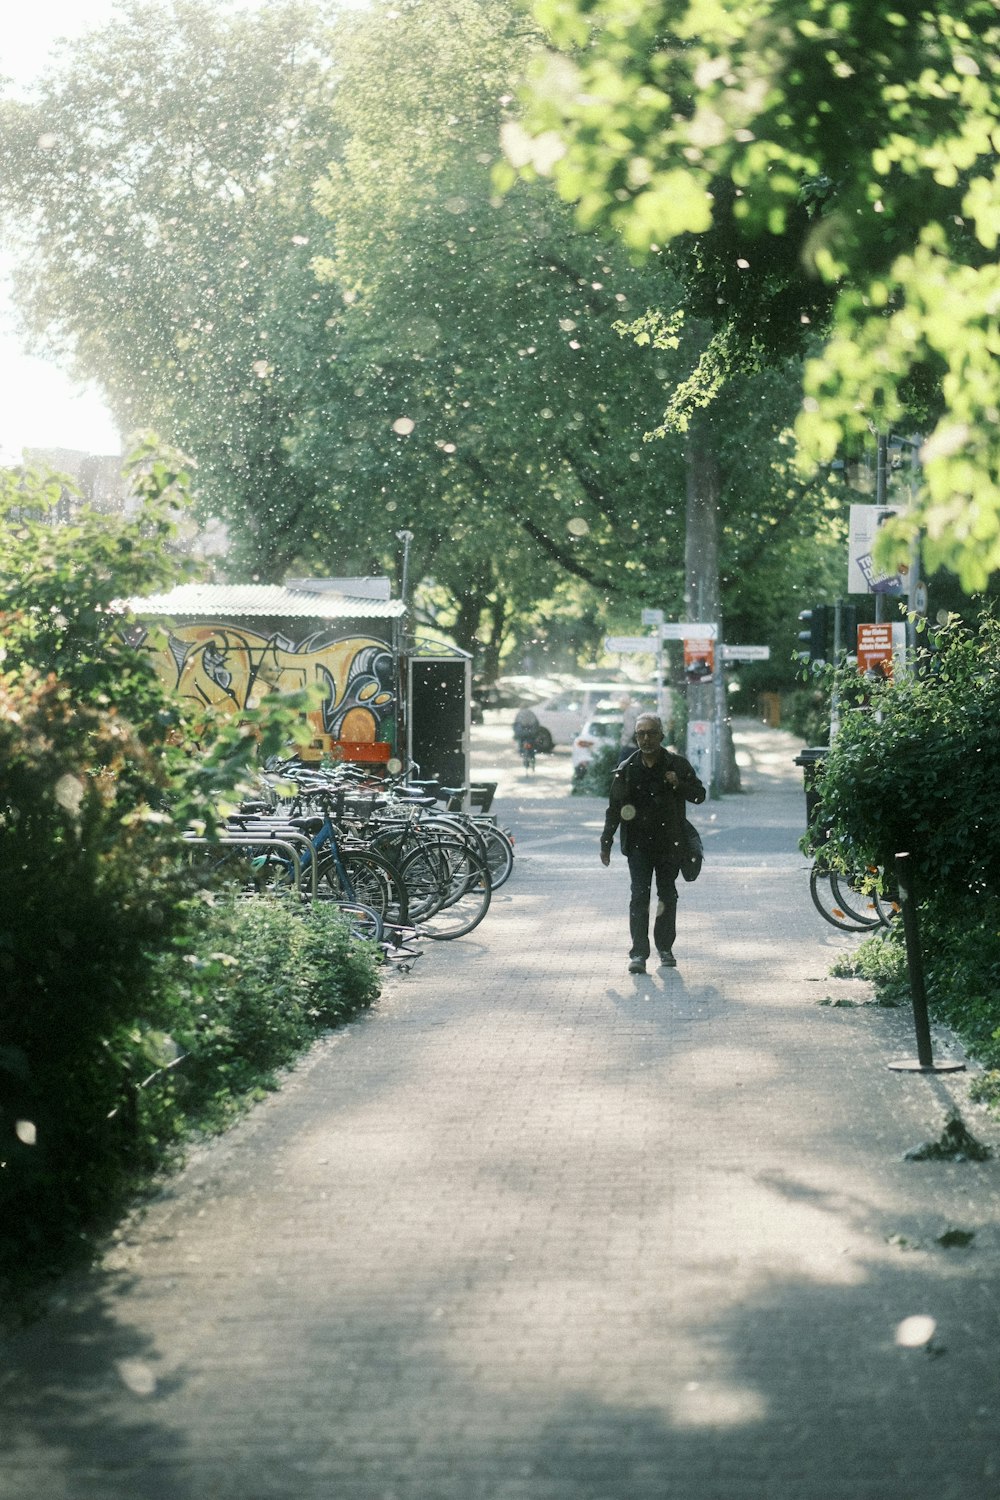 une personne marchant dans une rue à côté de vélos garés